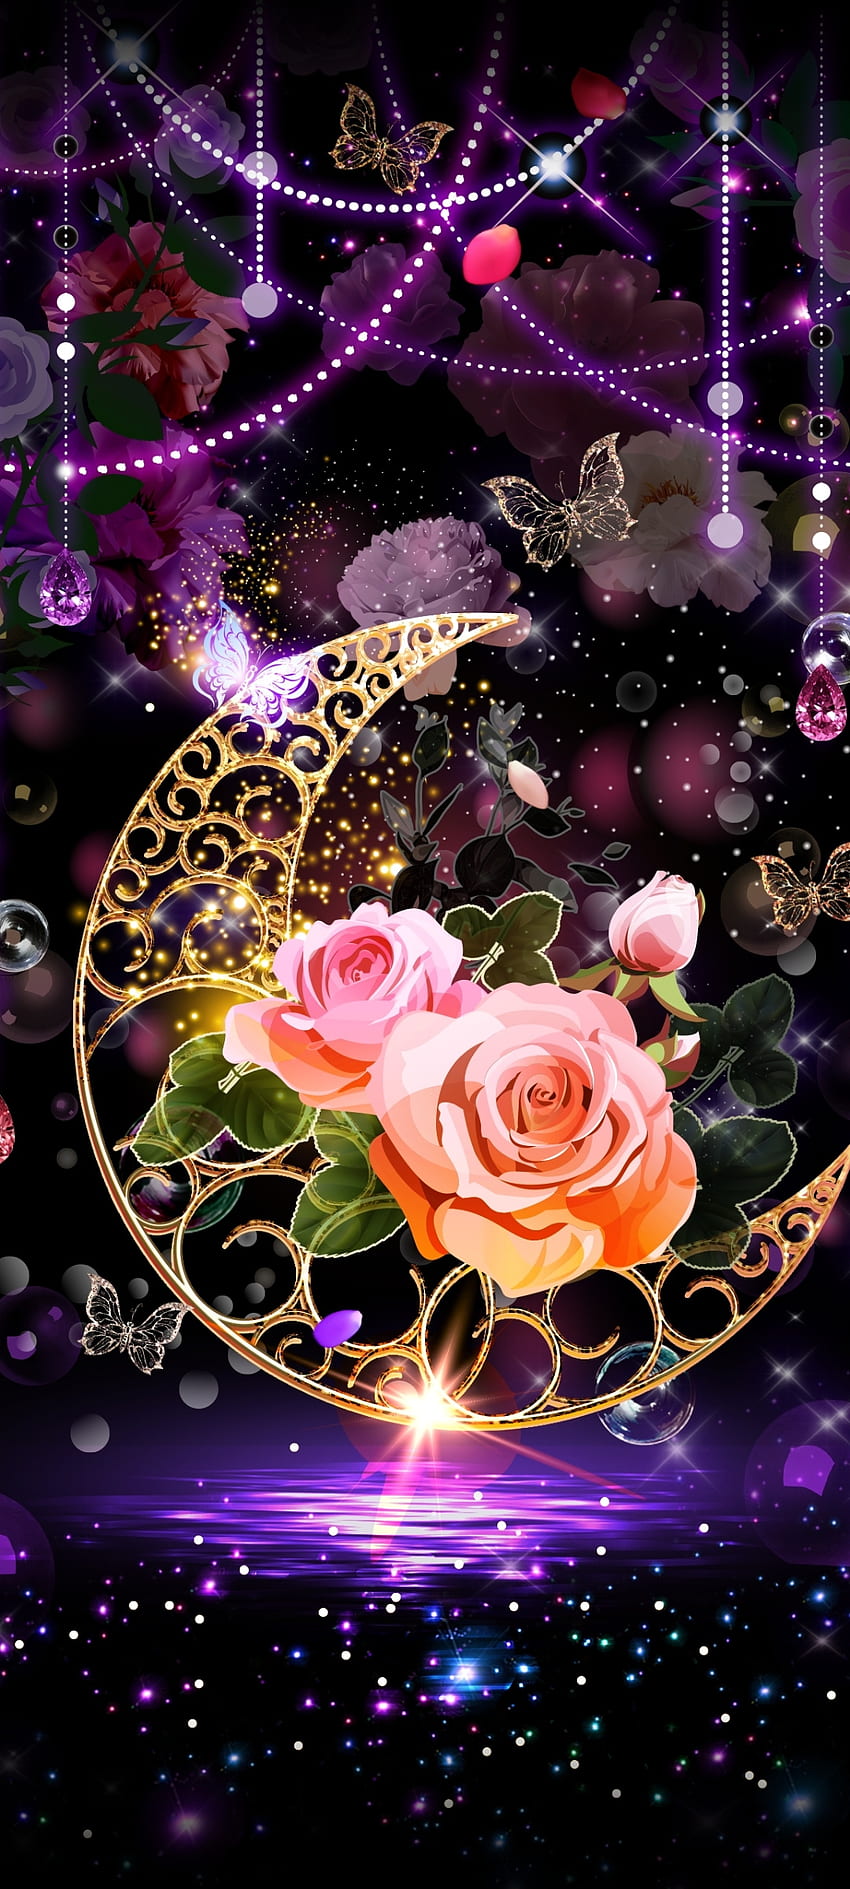 Kecantikan Bulan dan Bintang, Bunga, seni, pink, Cantik, Mewah, Malam wallpaper ponsel HD